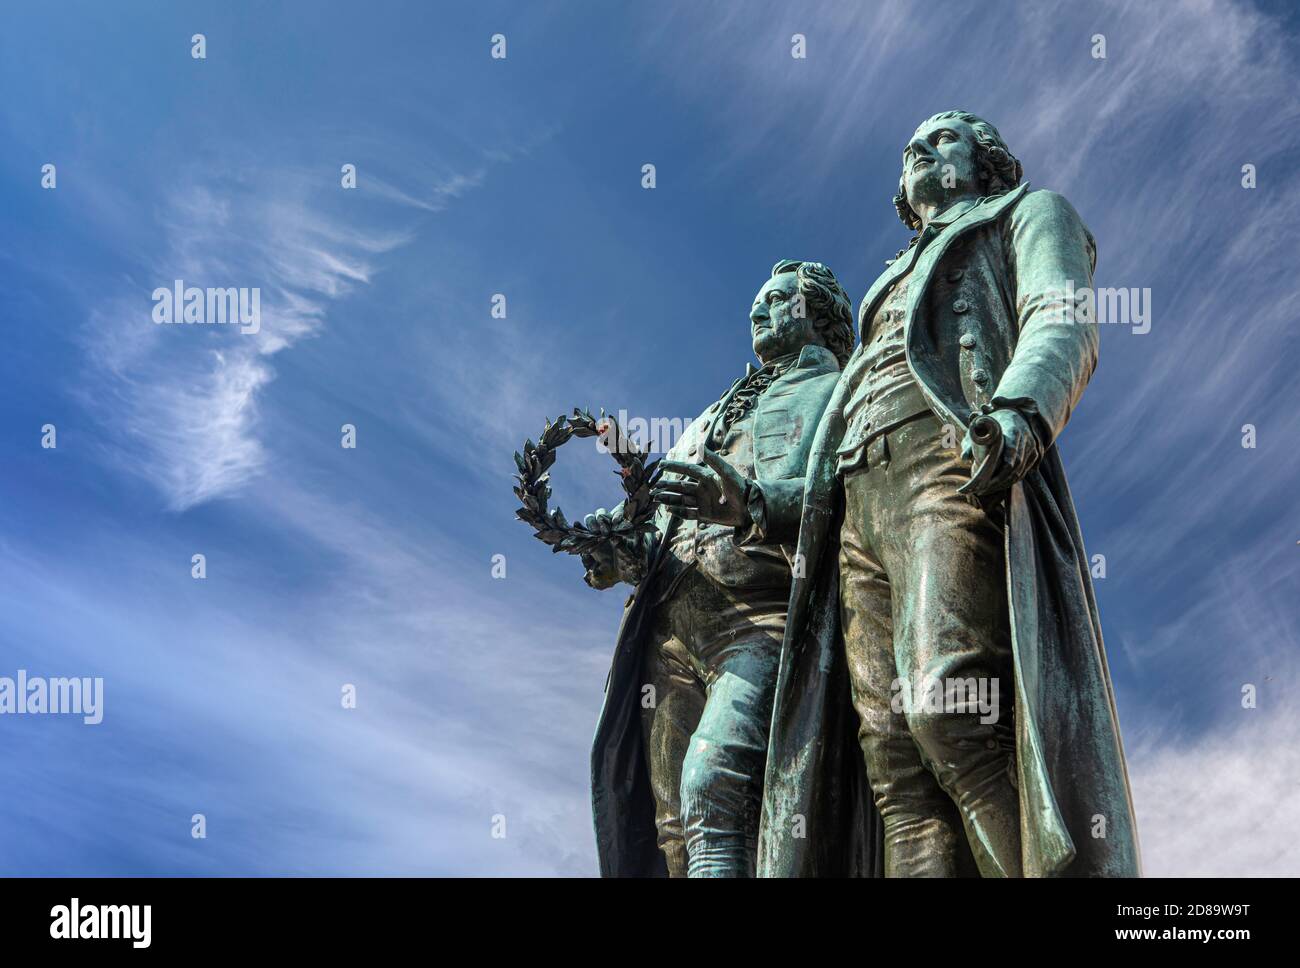 Il Monumento Goethe-Schiller a Weimar, in Germania. Johann Wolfgang Goethe, sulla sinistra, e Friedrich Schiller, sono figure molto apprezzate in Germania. Foto Stock